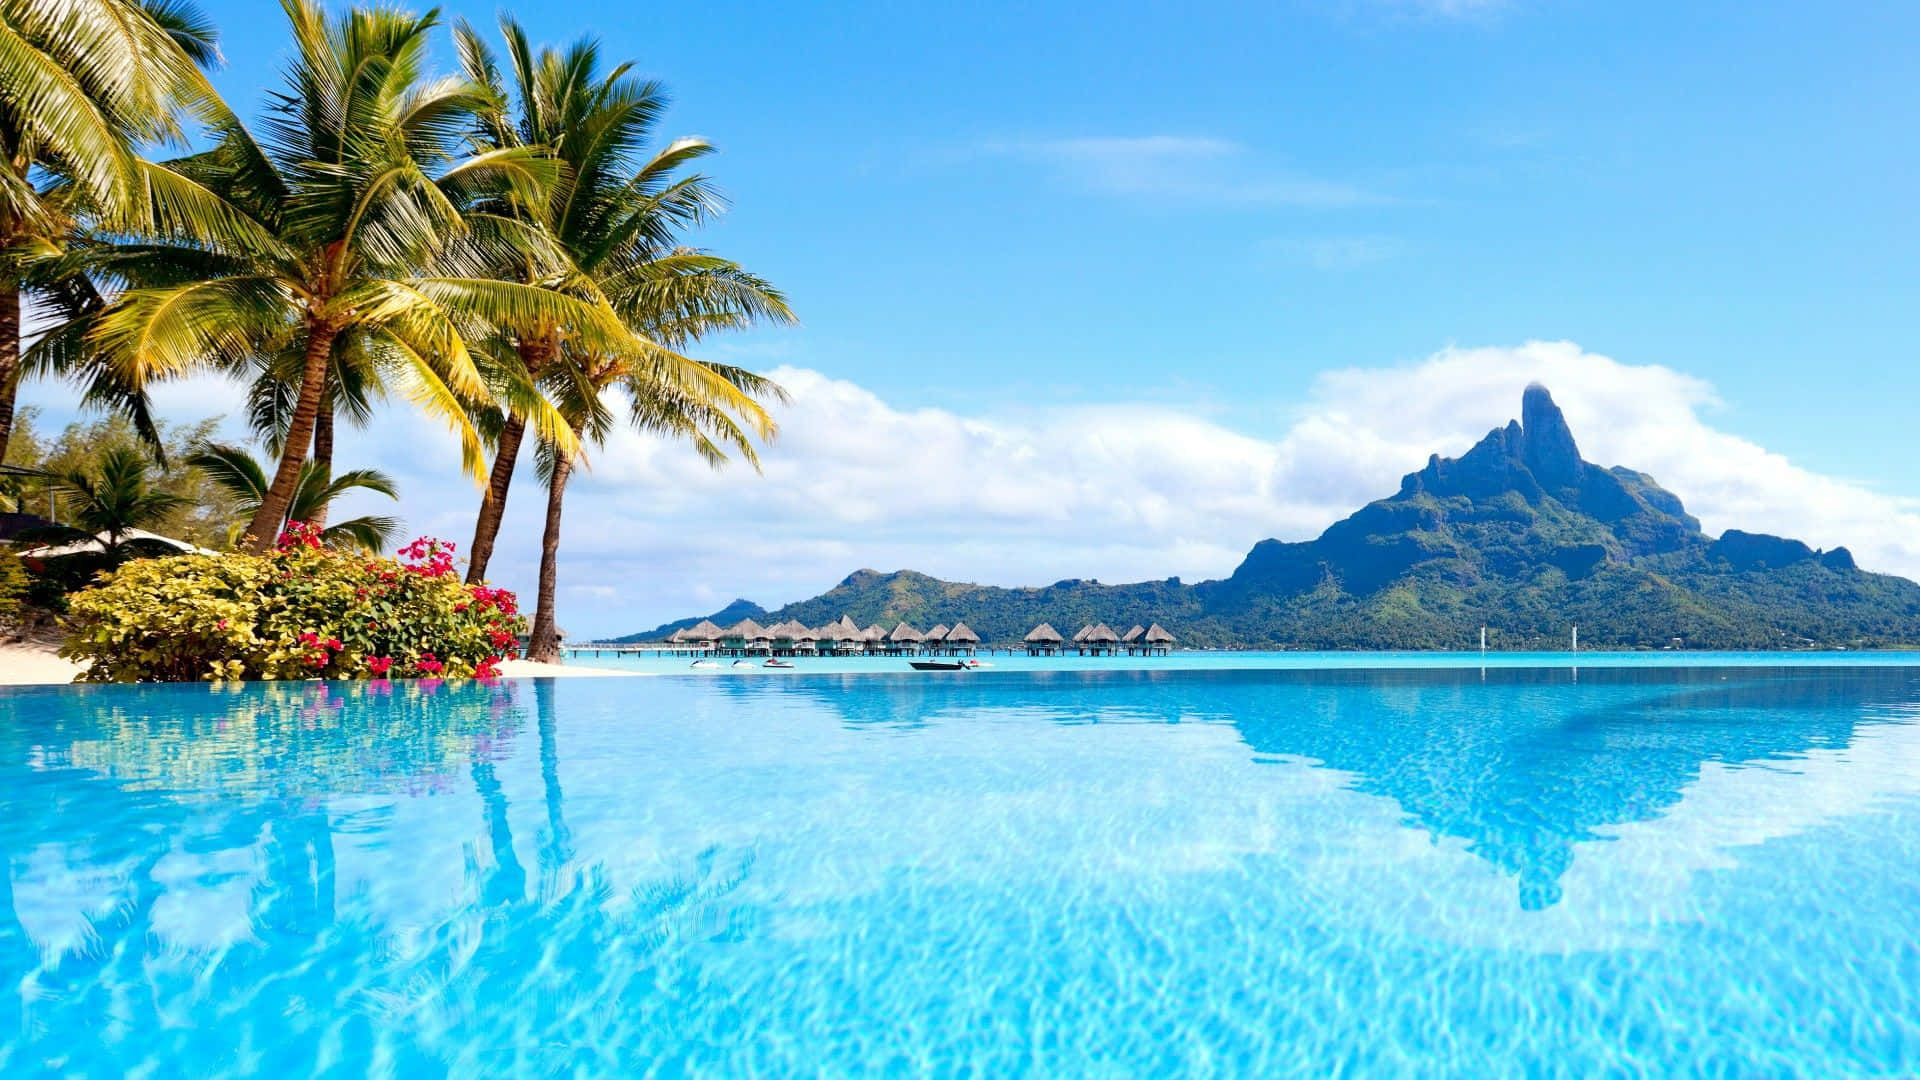 Paradise awaits in Bora Bora